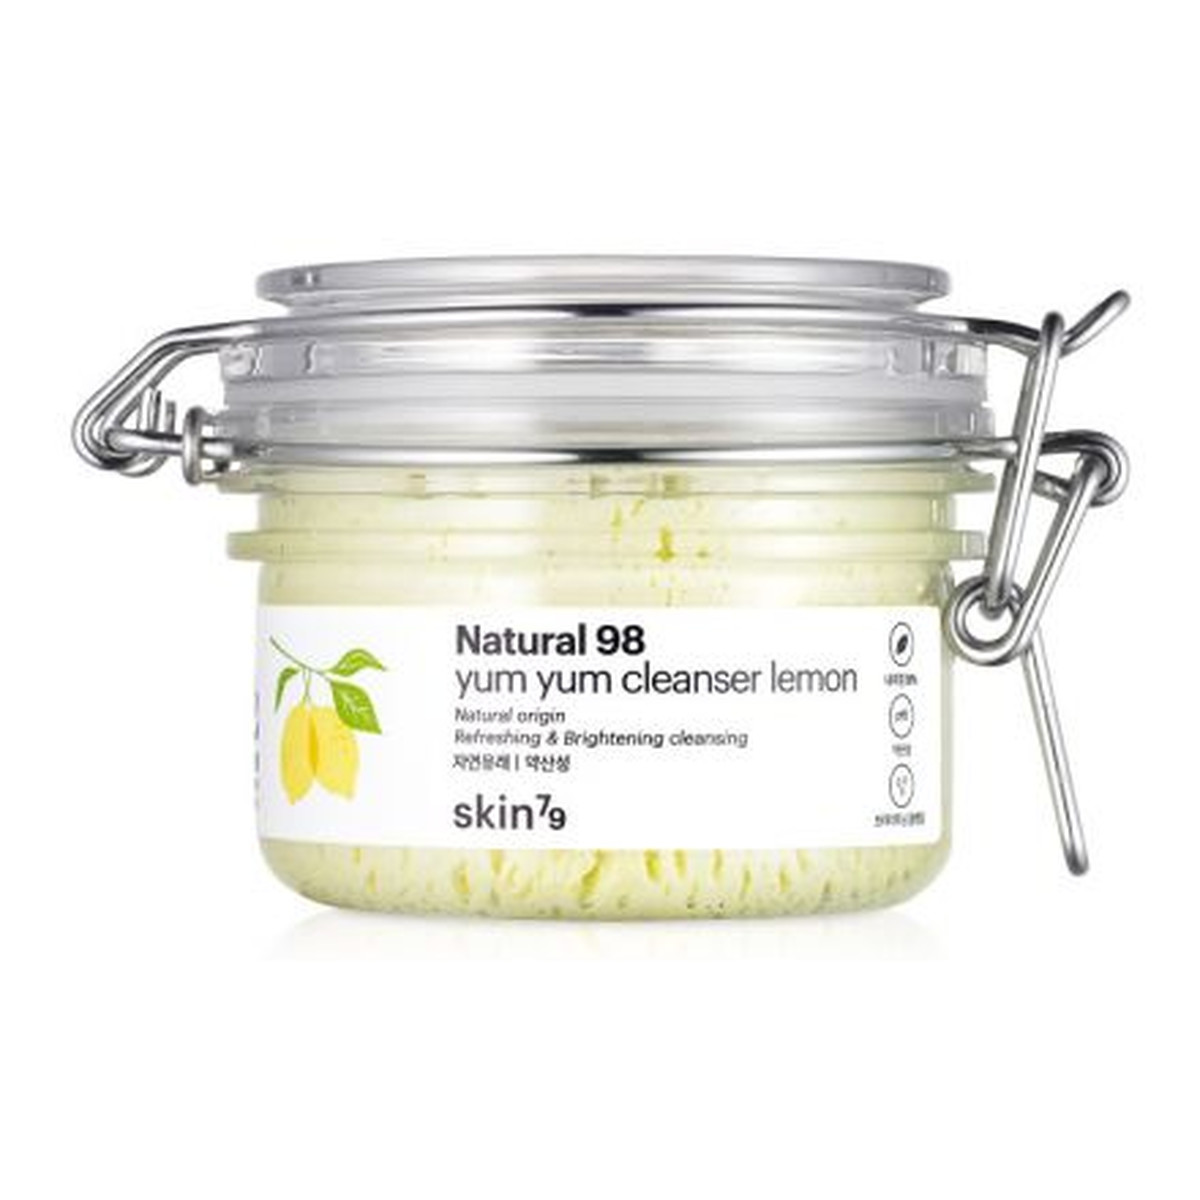 Skin79 Natural 98 Yum Yum Cleanser Mus Oczyszczający Lemon do demakijażu twarzy każda cera 100g